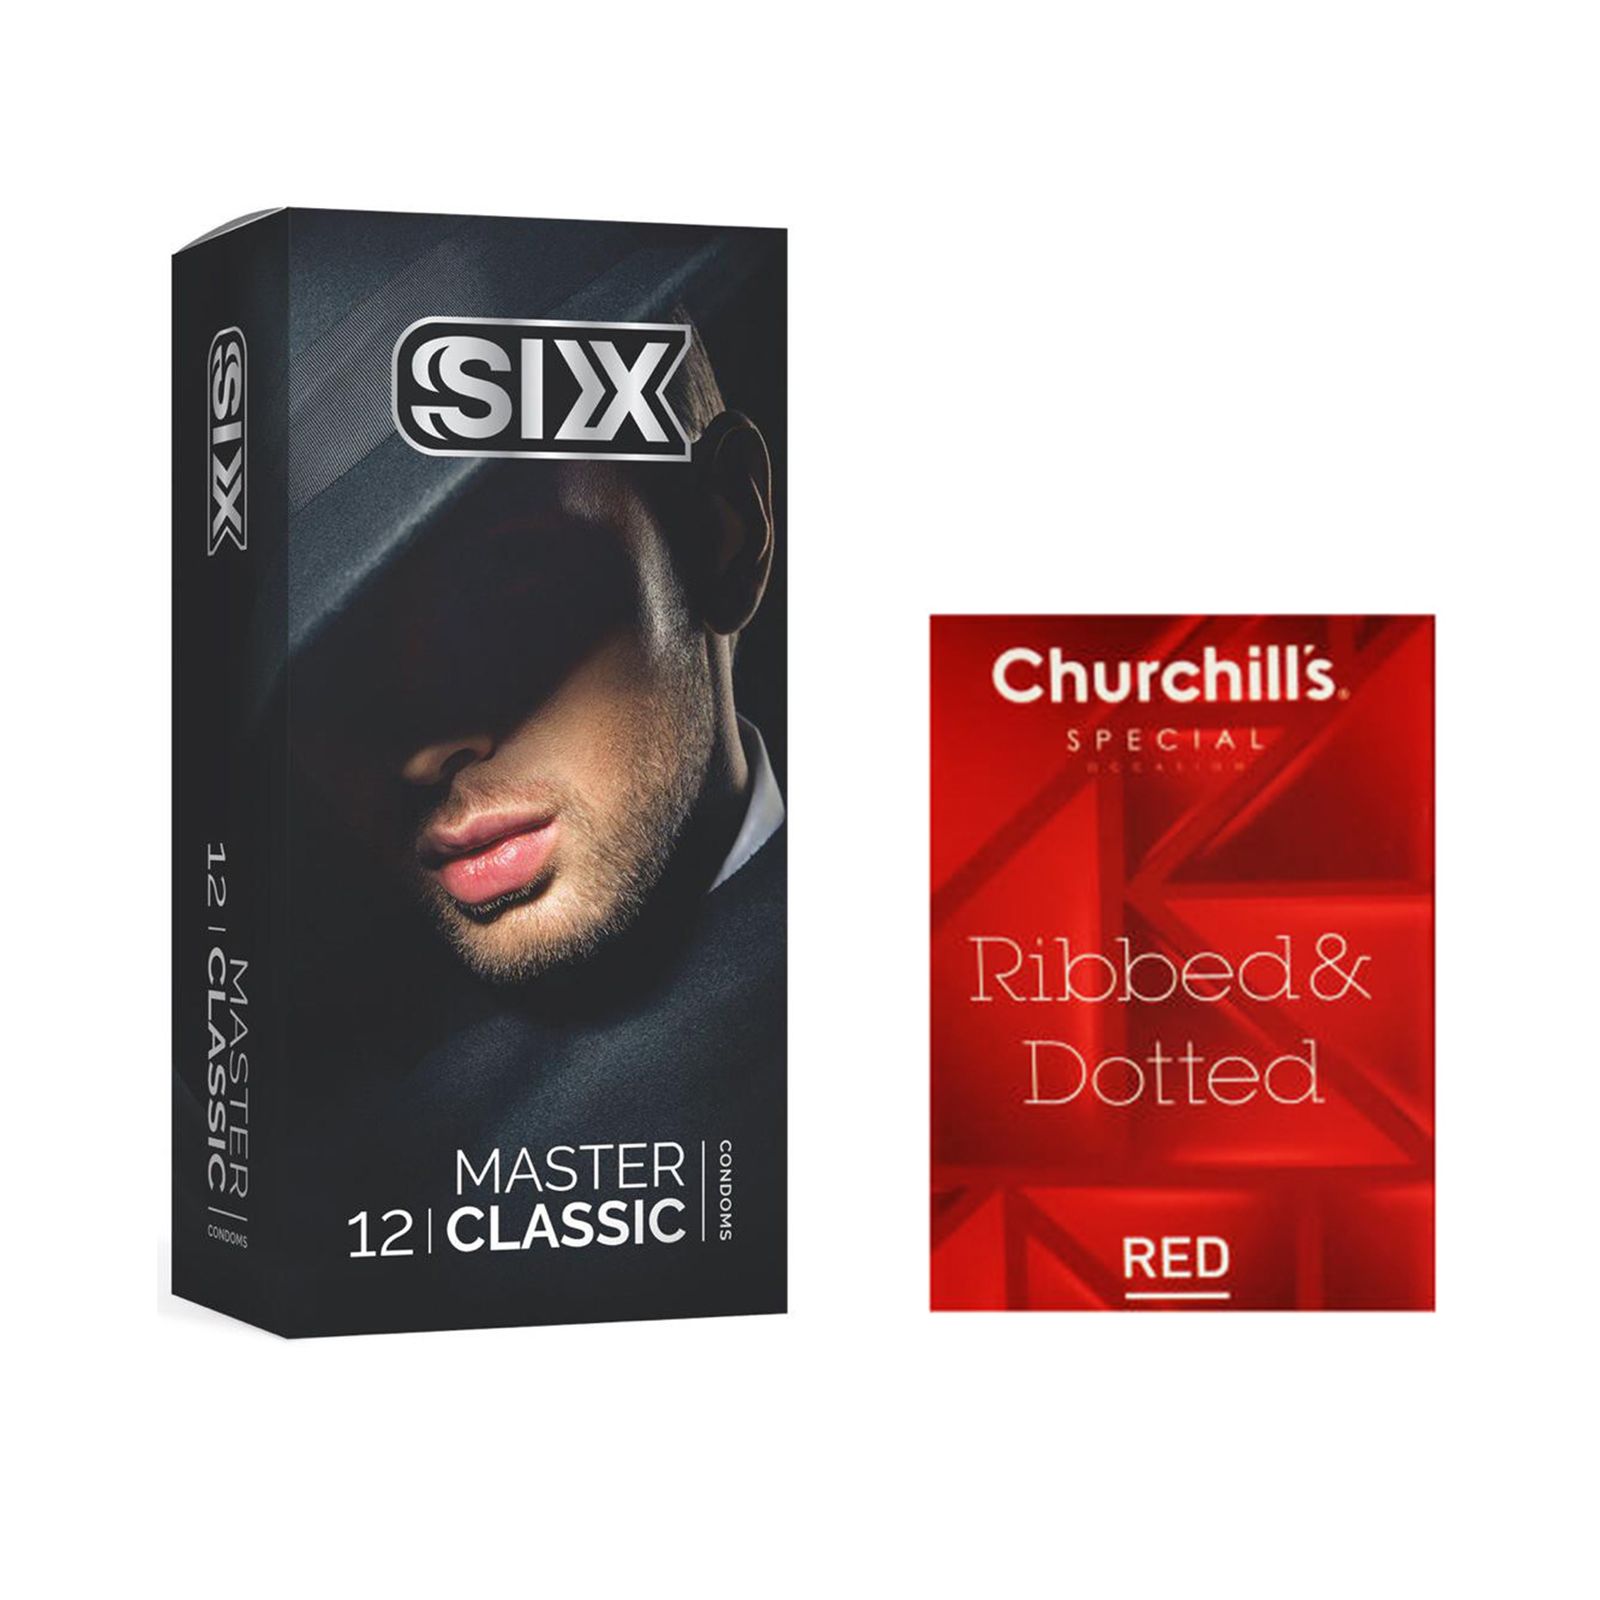 کاندوم سیکس مدل Master Classic بسته 12 عددی به همراه کاندوم چرچیلز مدل Hot Gel بسته 3 عددی -  - 1